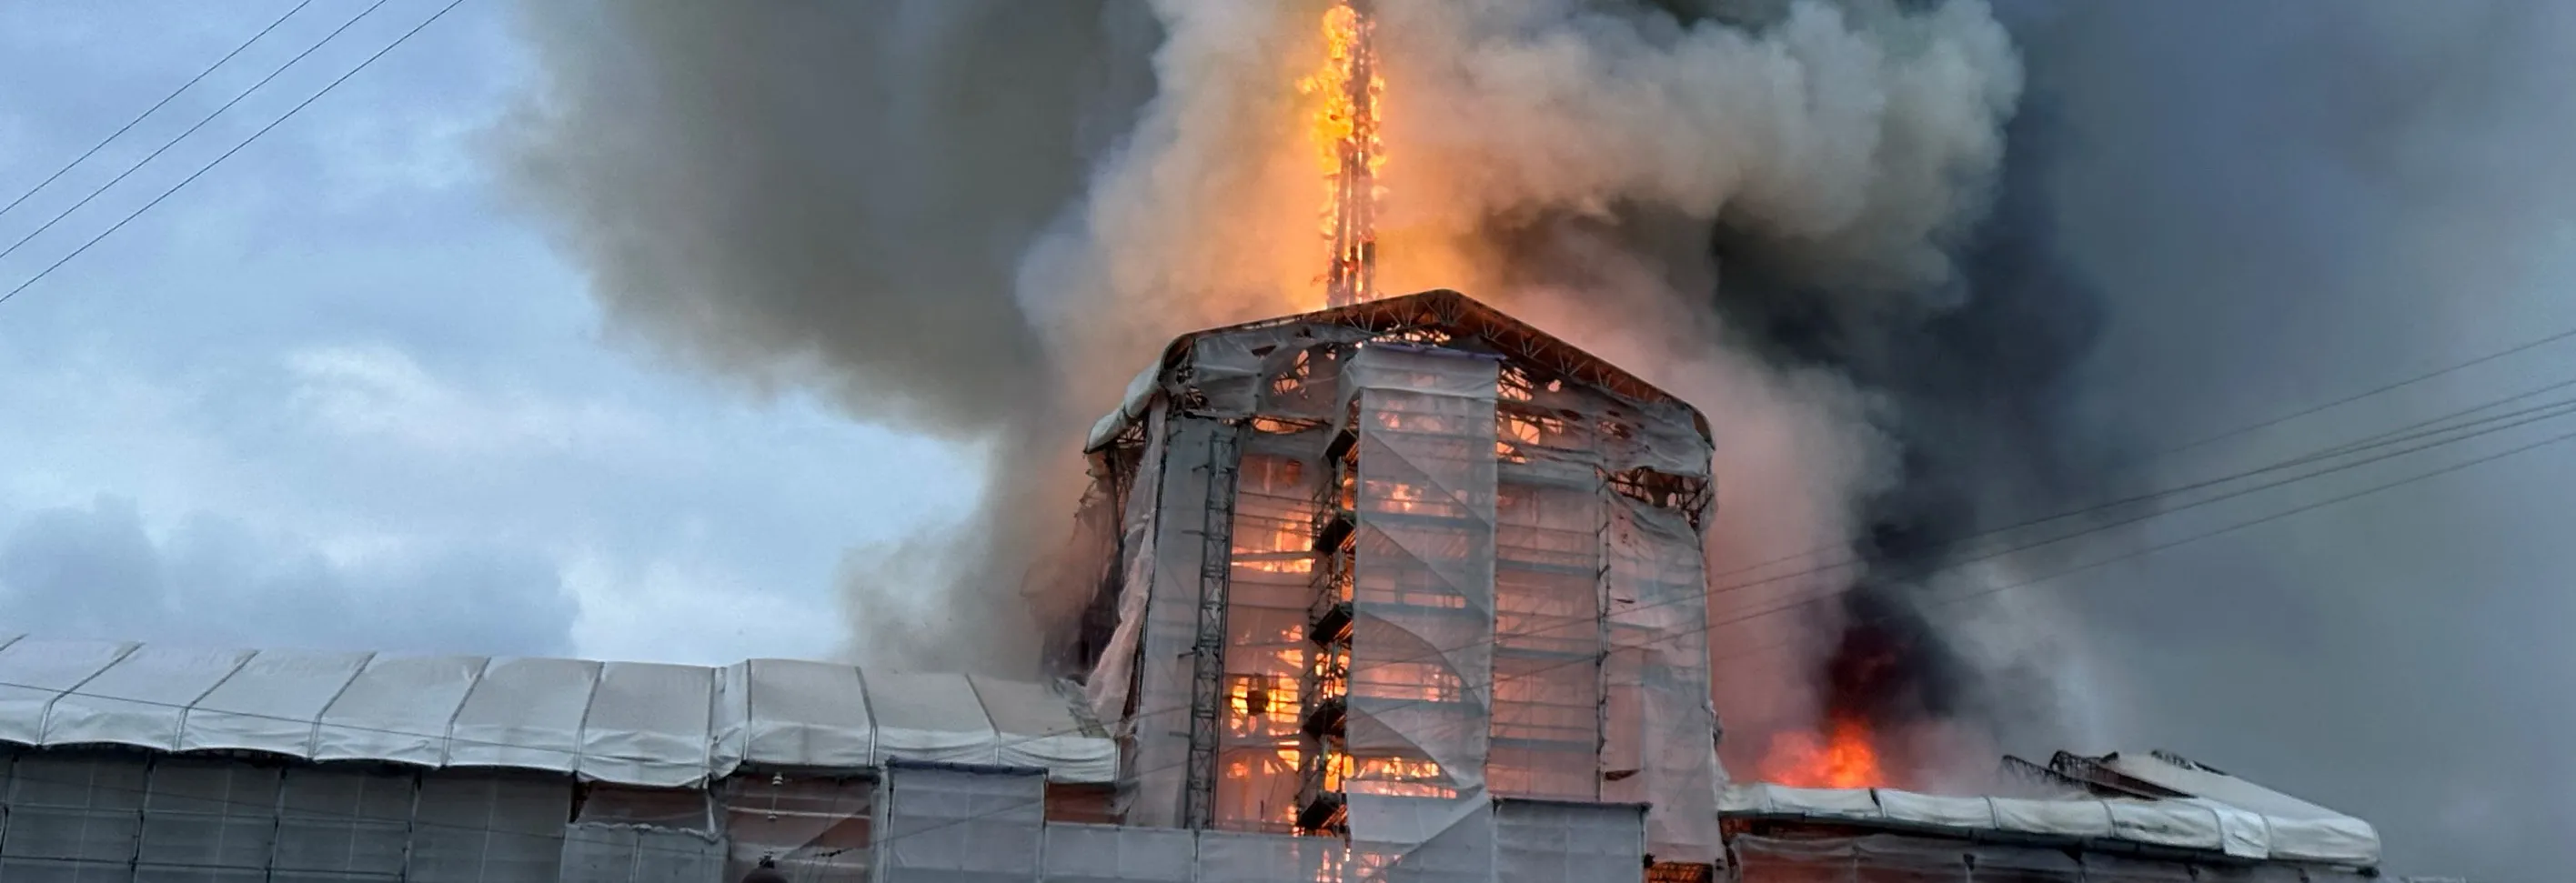 V Kodani hoří historická budova burzy, její ikonická věž se zřítila